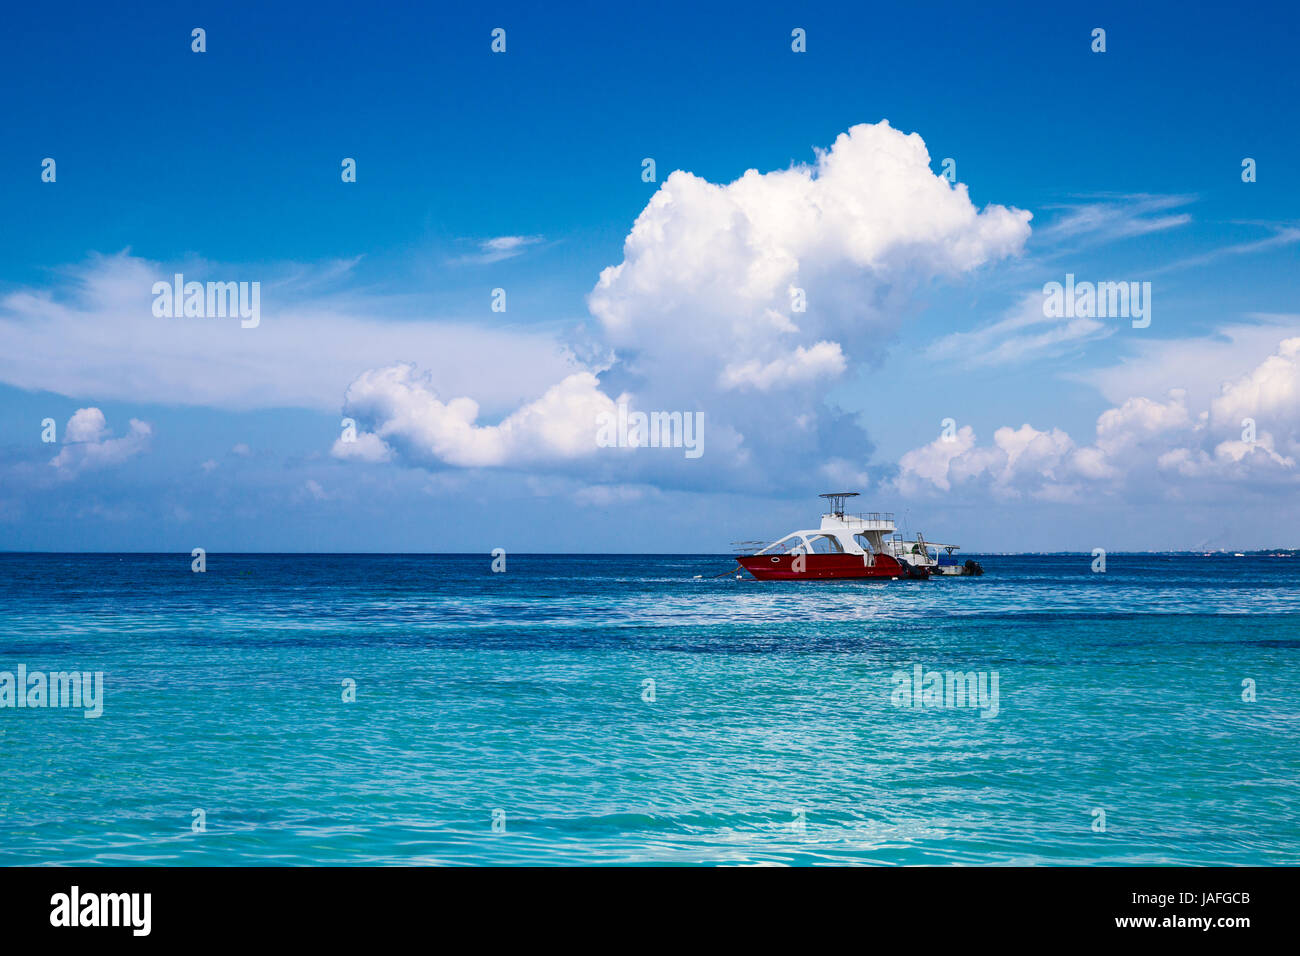 Boote in der Karibik. Ein gesättigter blauer Himmel, Wolken und das Meer. Dominikanische Republik Stockfoto